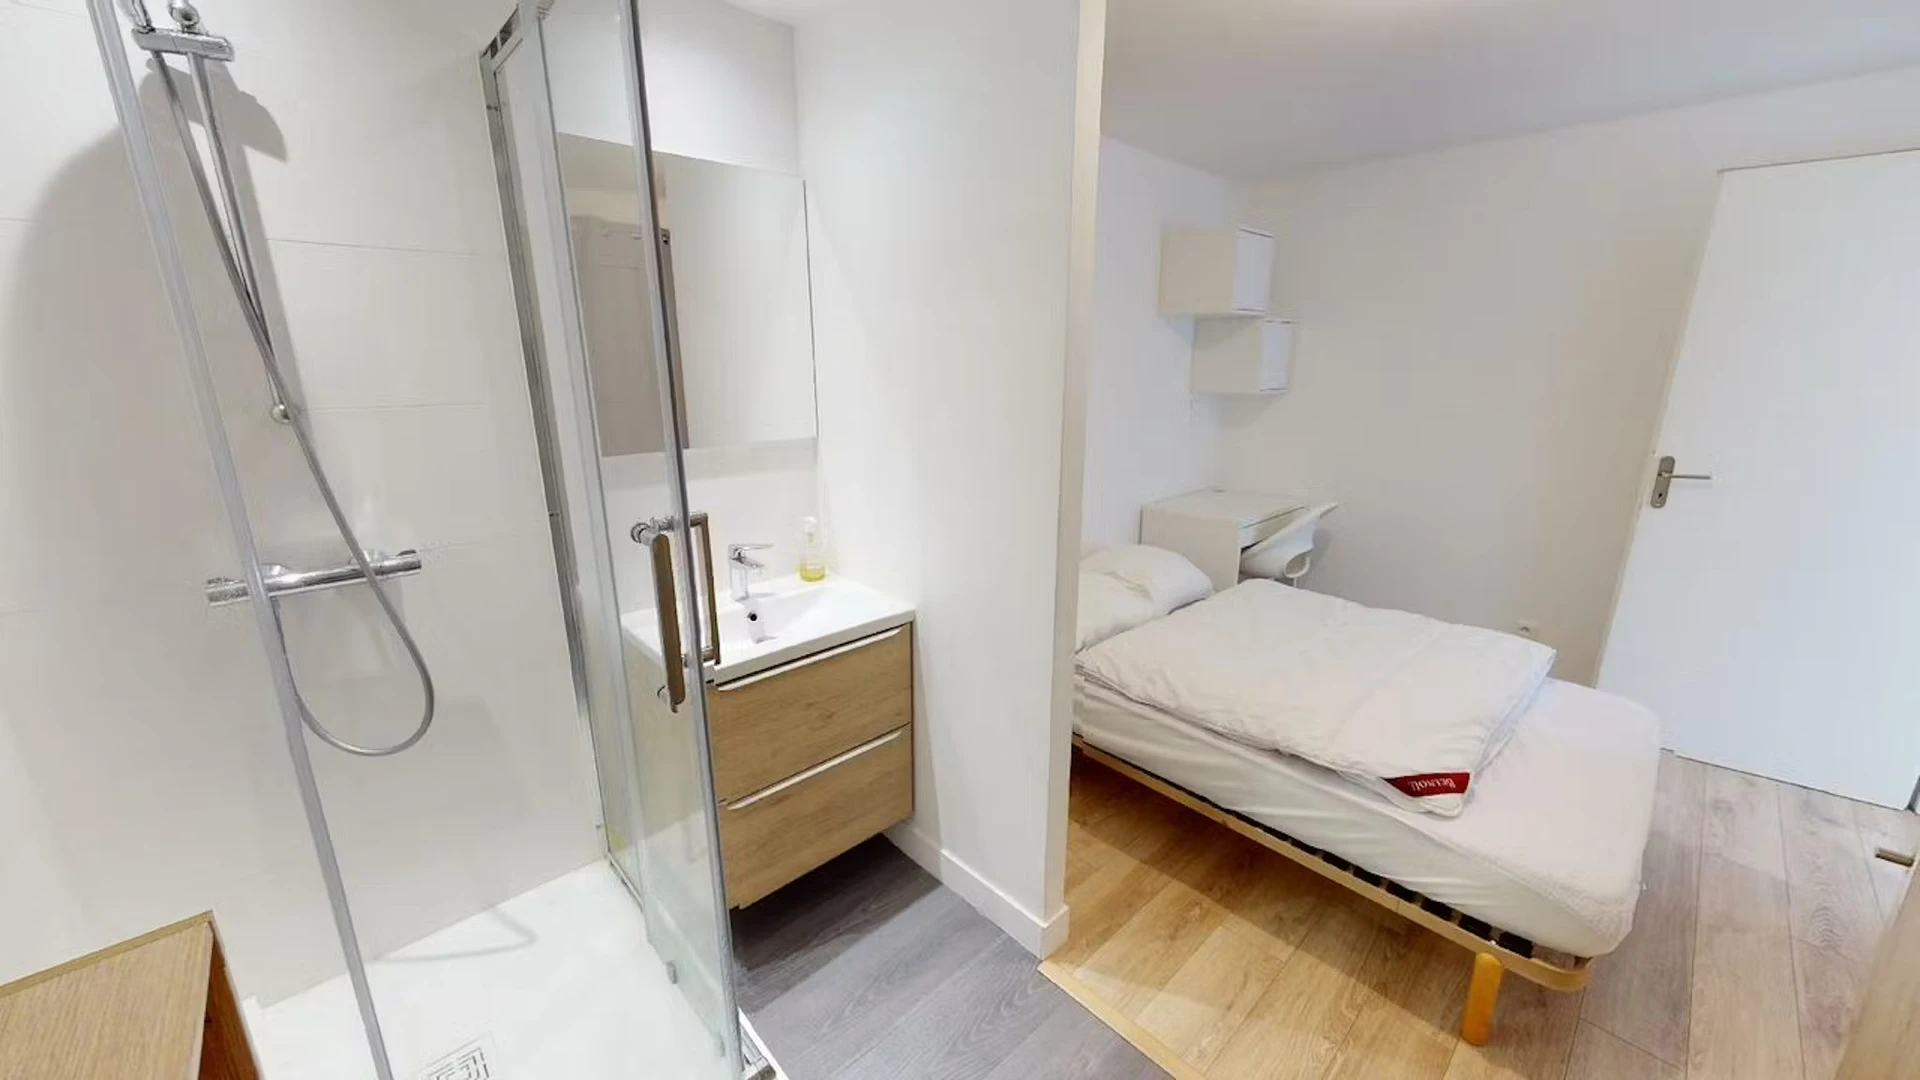 Chambre à louer dans un appartement en colocation à Poitiers